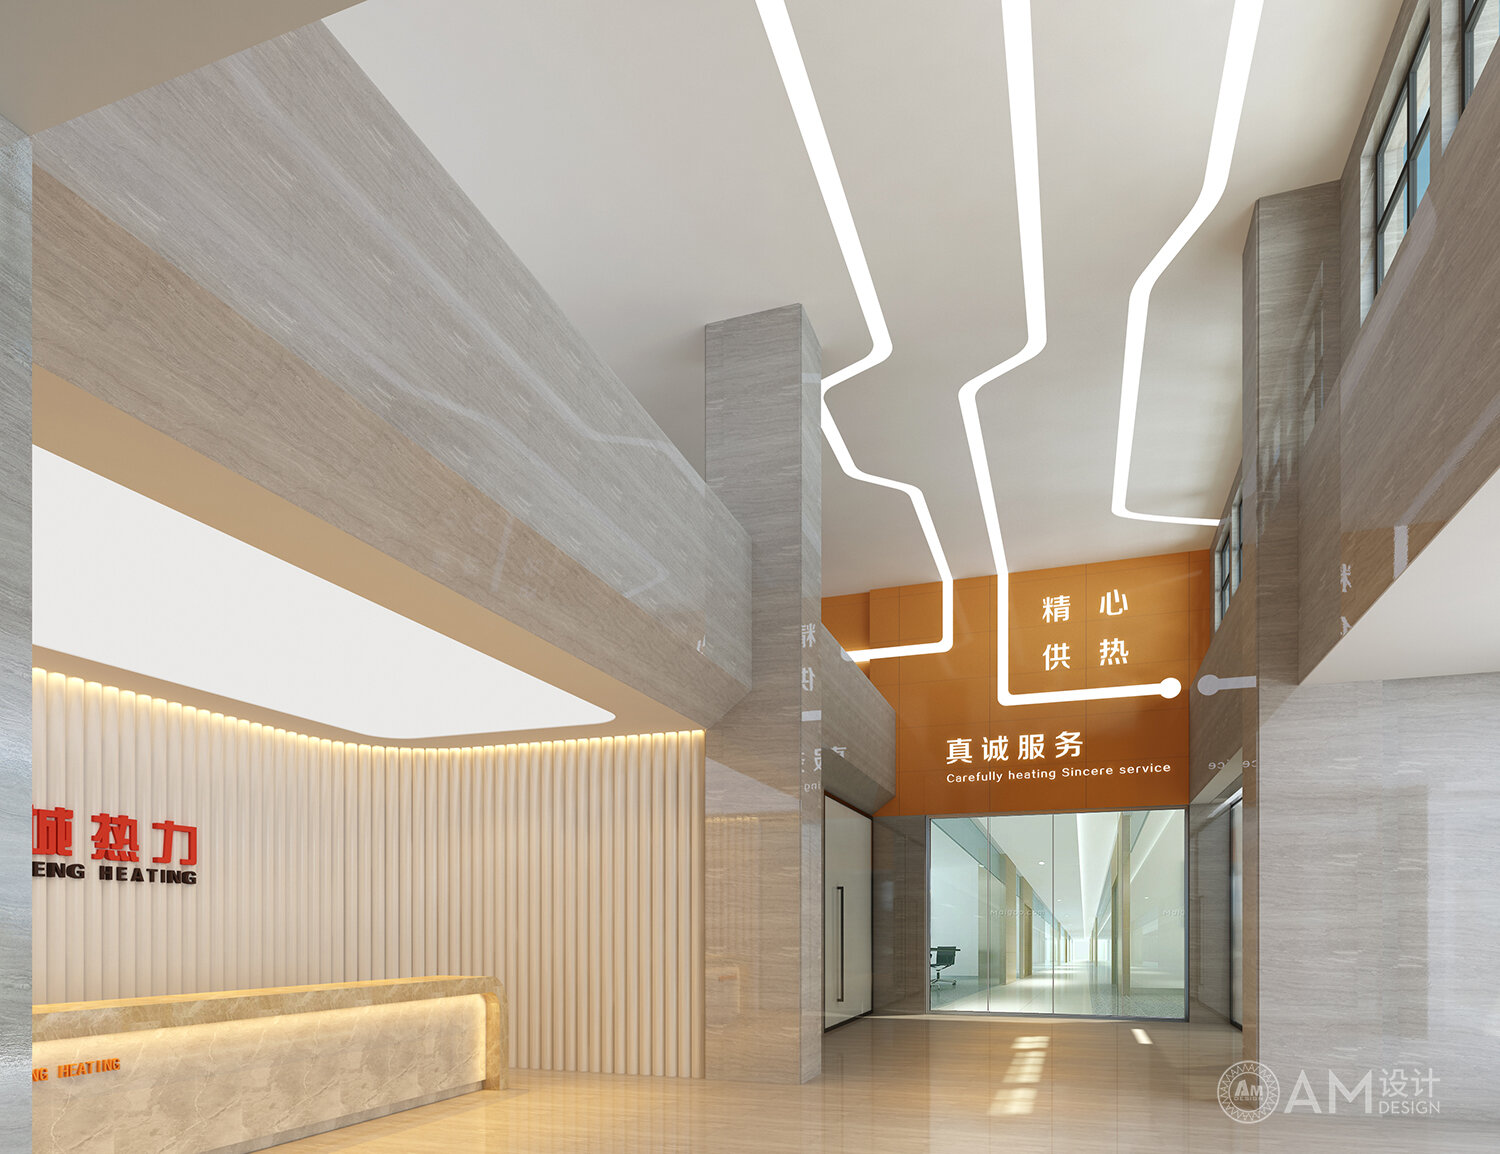 AM设计 | 北京通州新城热力办公楼大堂设计